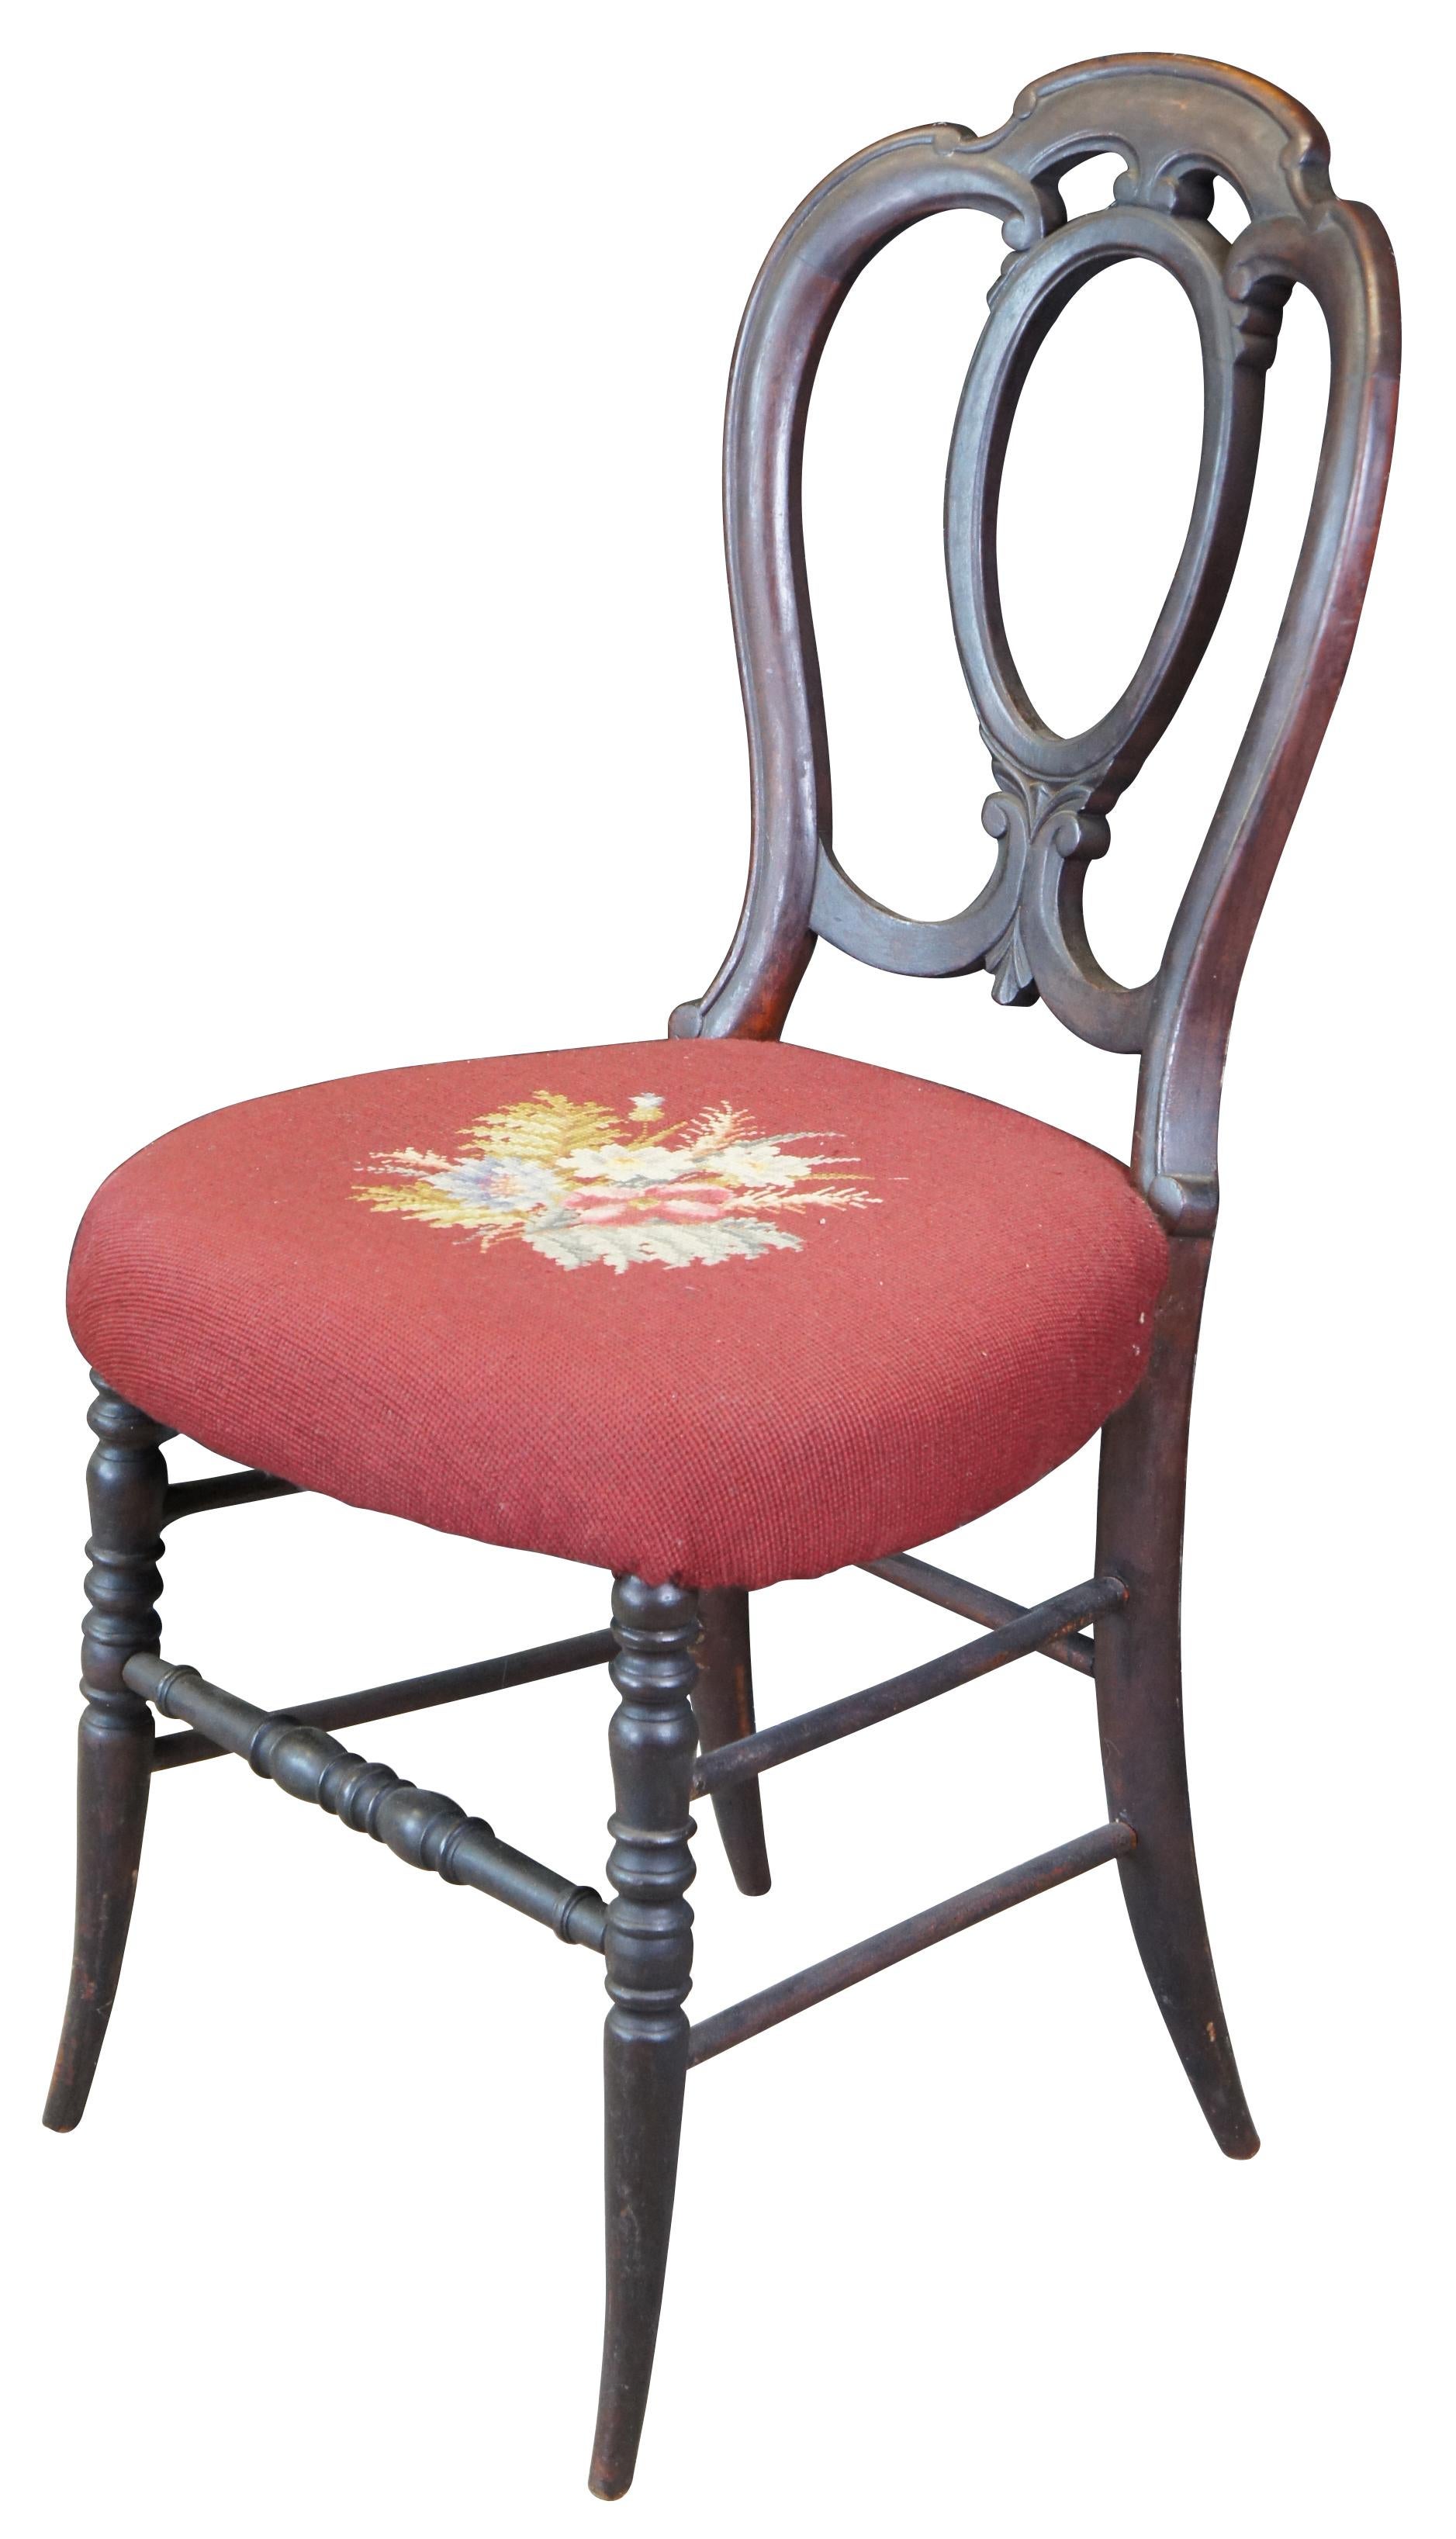 Chaise ancienne à dossier en forme de ballon du XIXe siècle. Fabriqué en acajou de forme serpentine avec un dossier en forme de ballon, une assise en forme de ballon et des accents tournés.
     